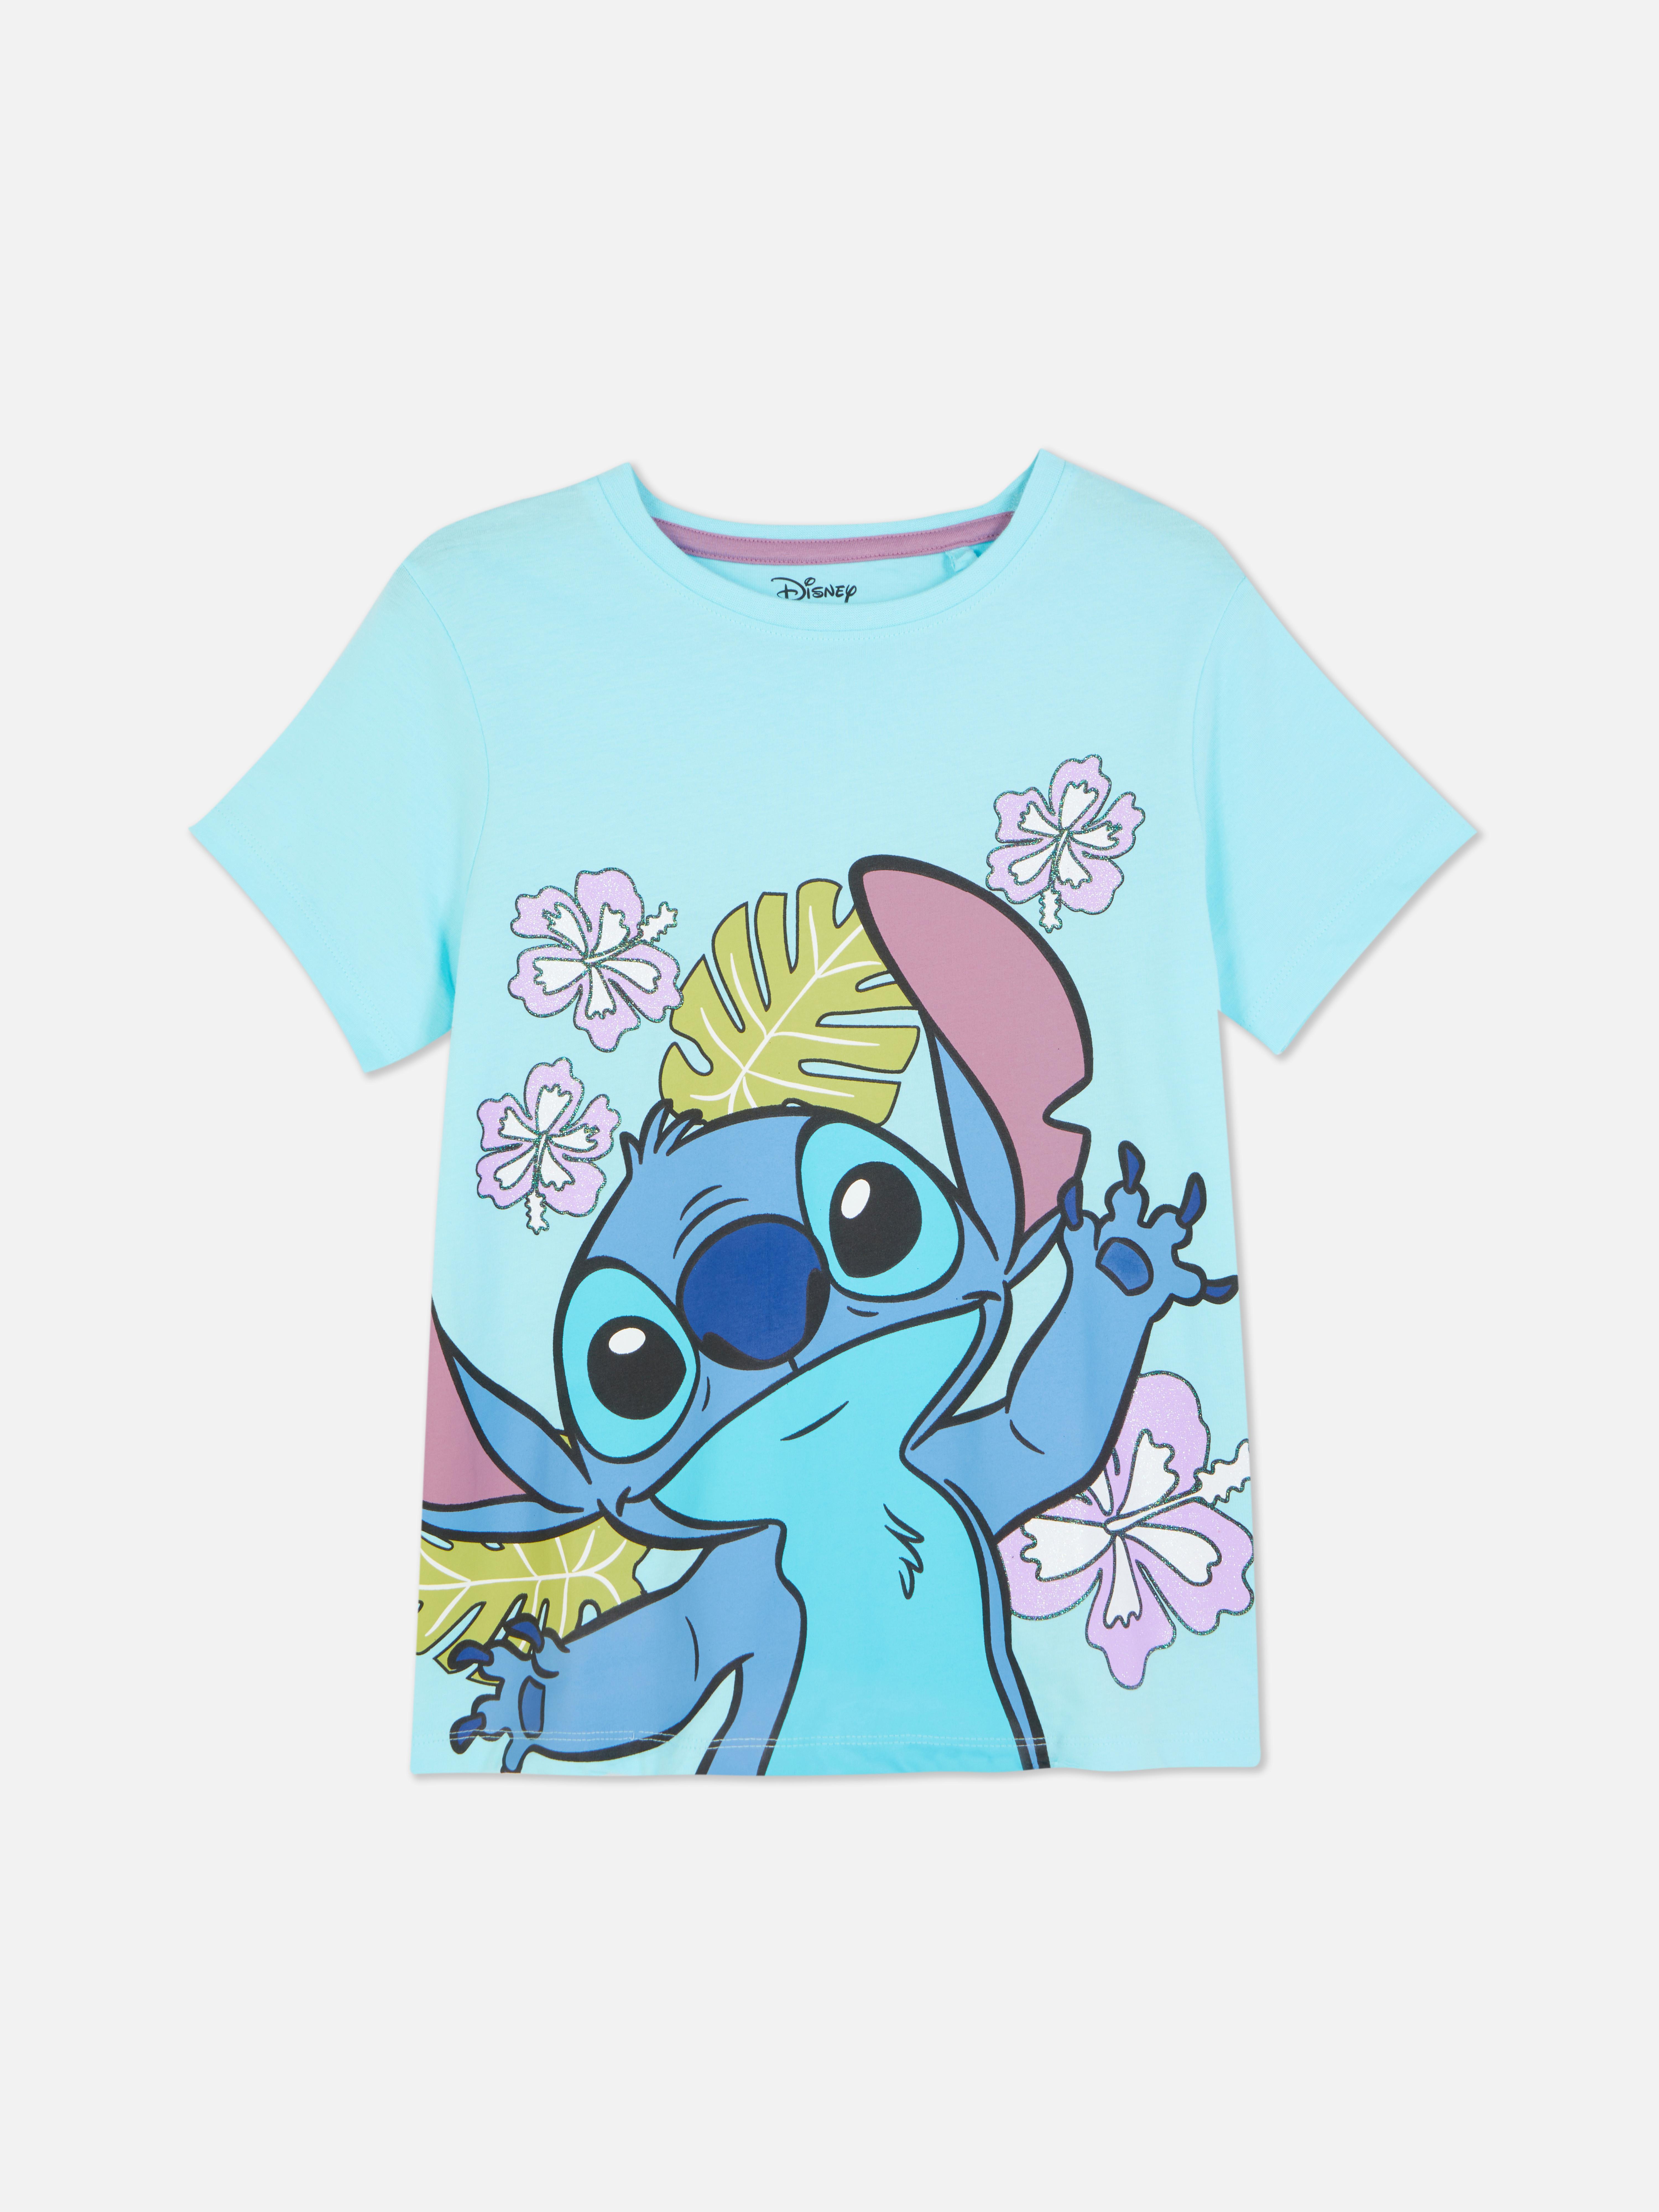 Disney’s Lilo & Stitch T-shirt